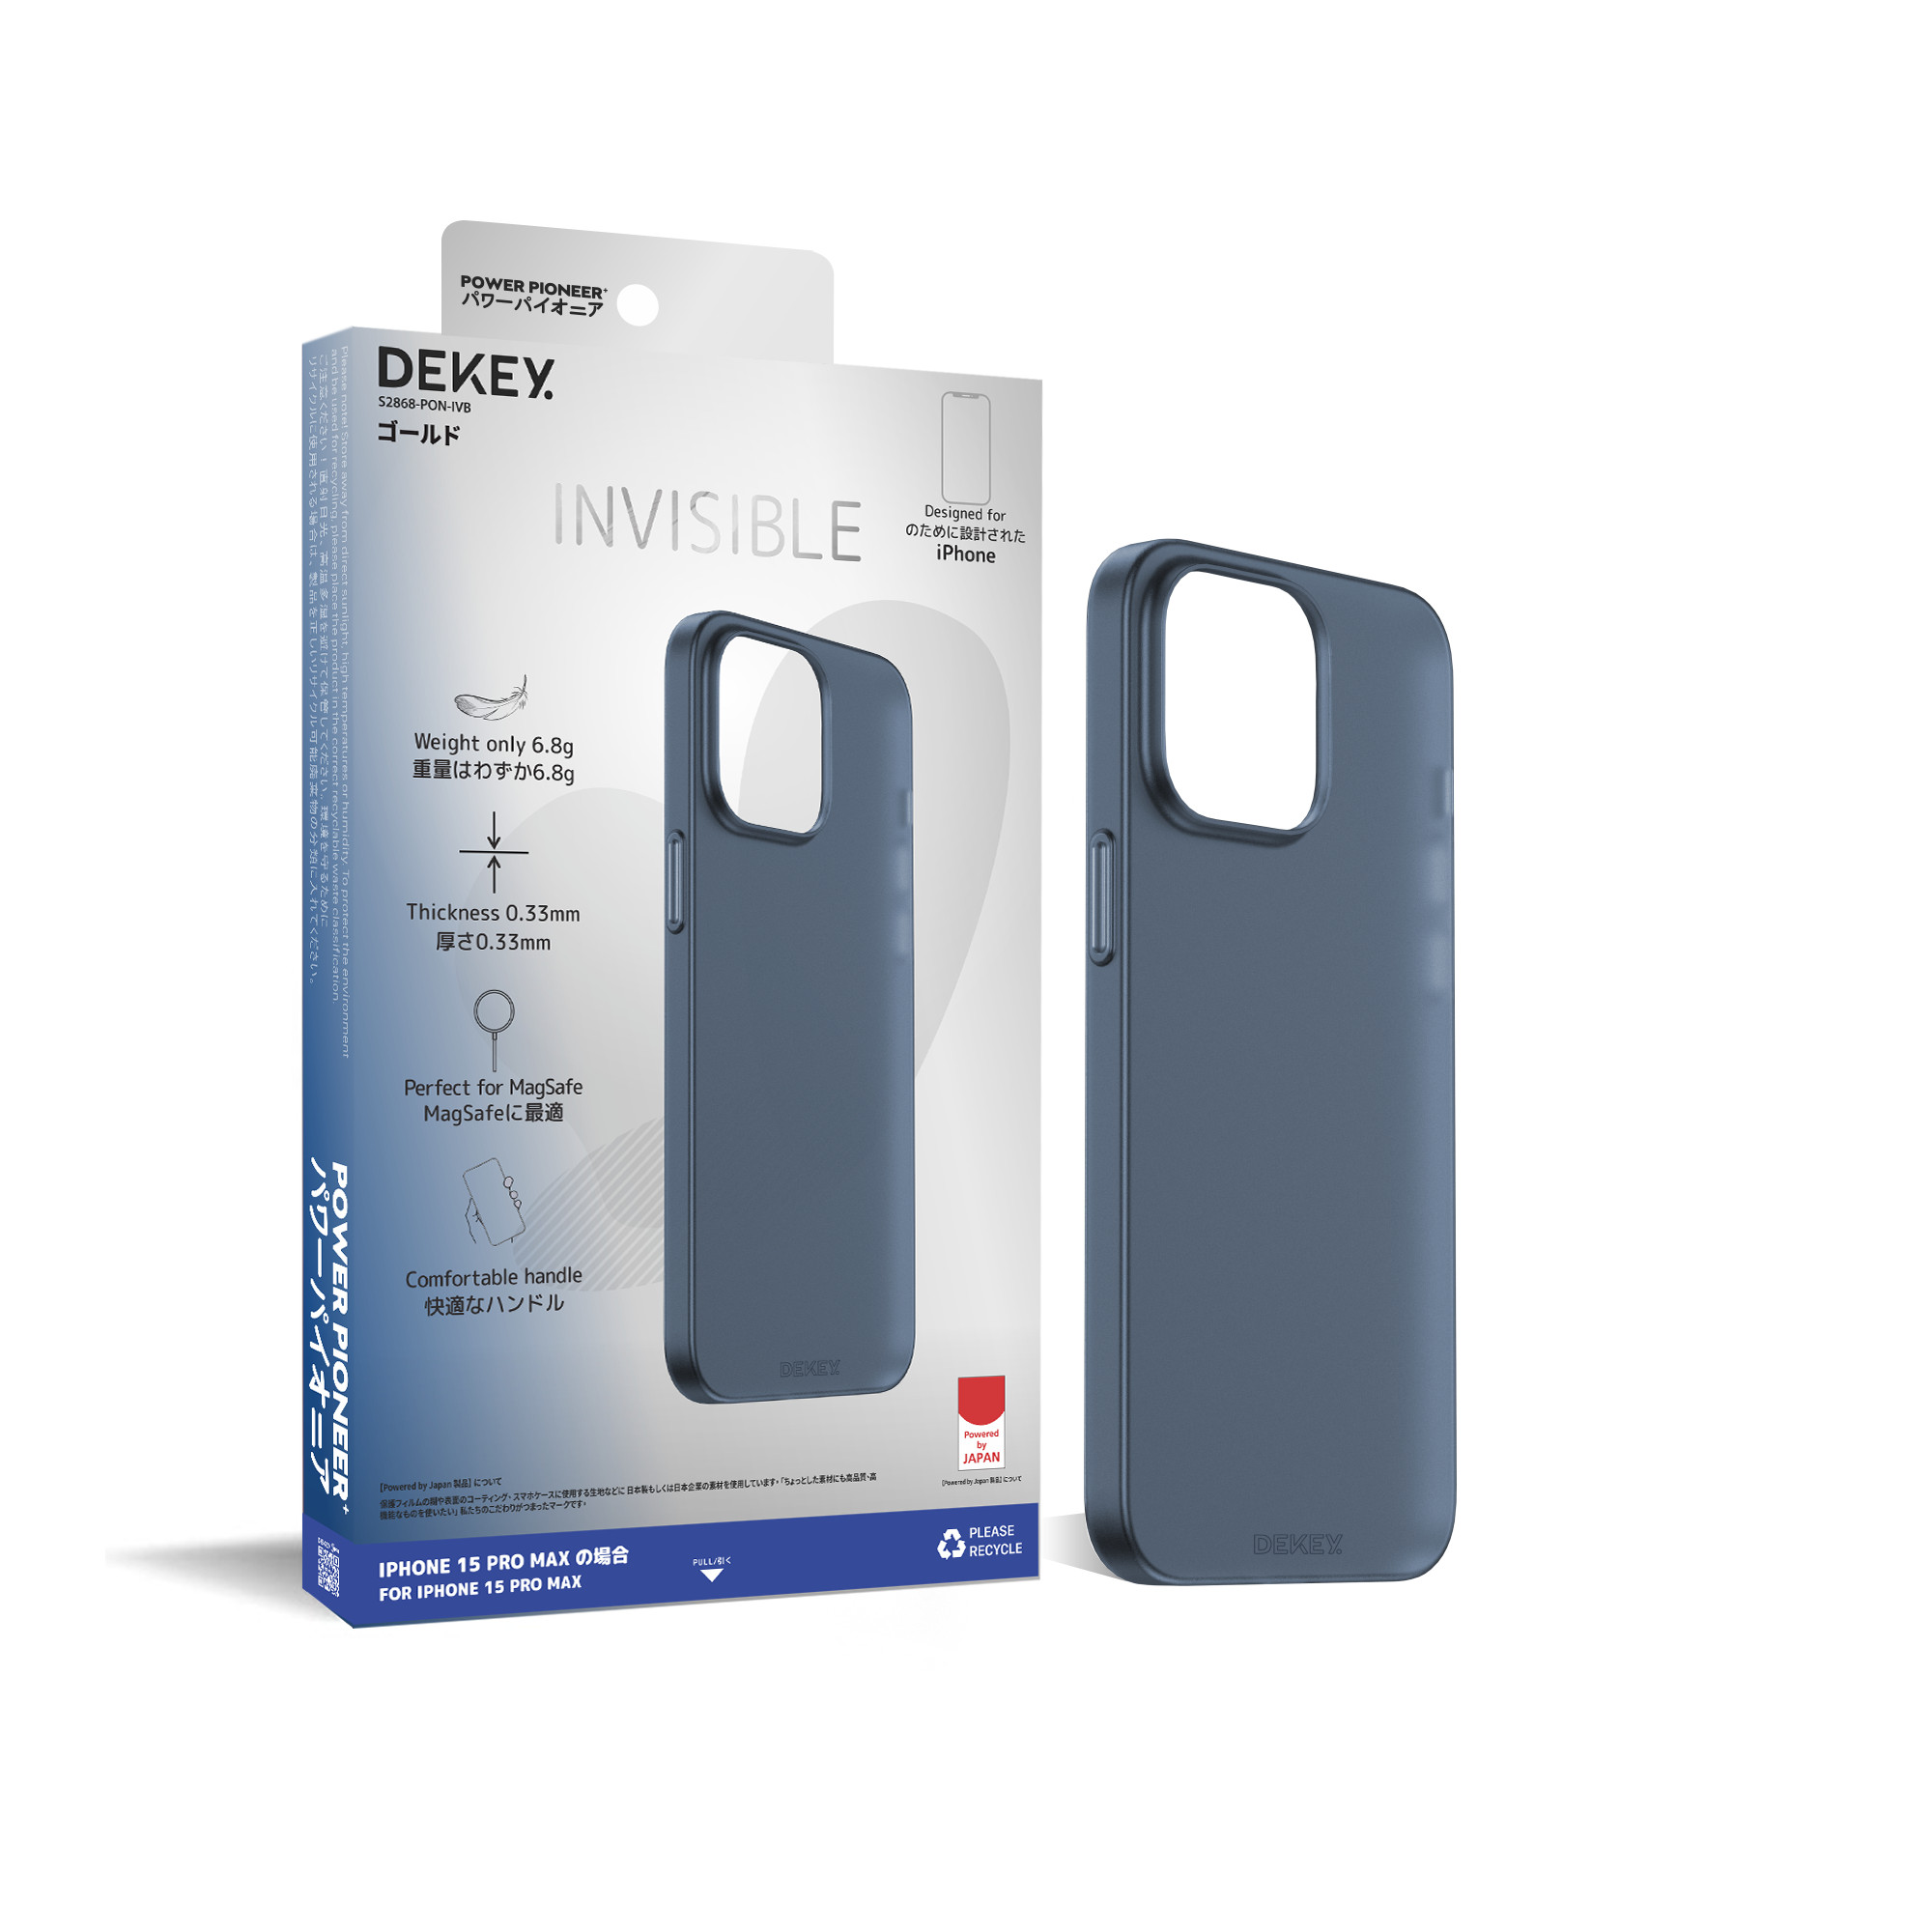 Dekey iPhone 15 Promax Invisible Ultra Slim Case, Anti-fingerprint and anti-scratch 2